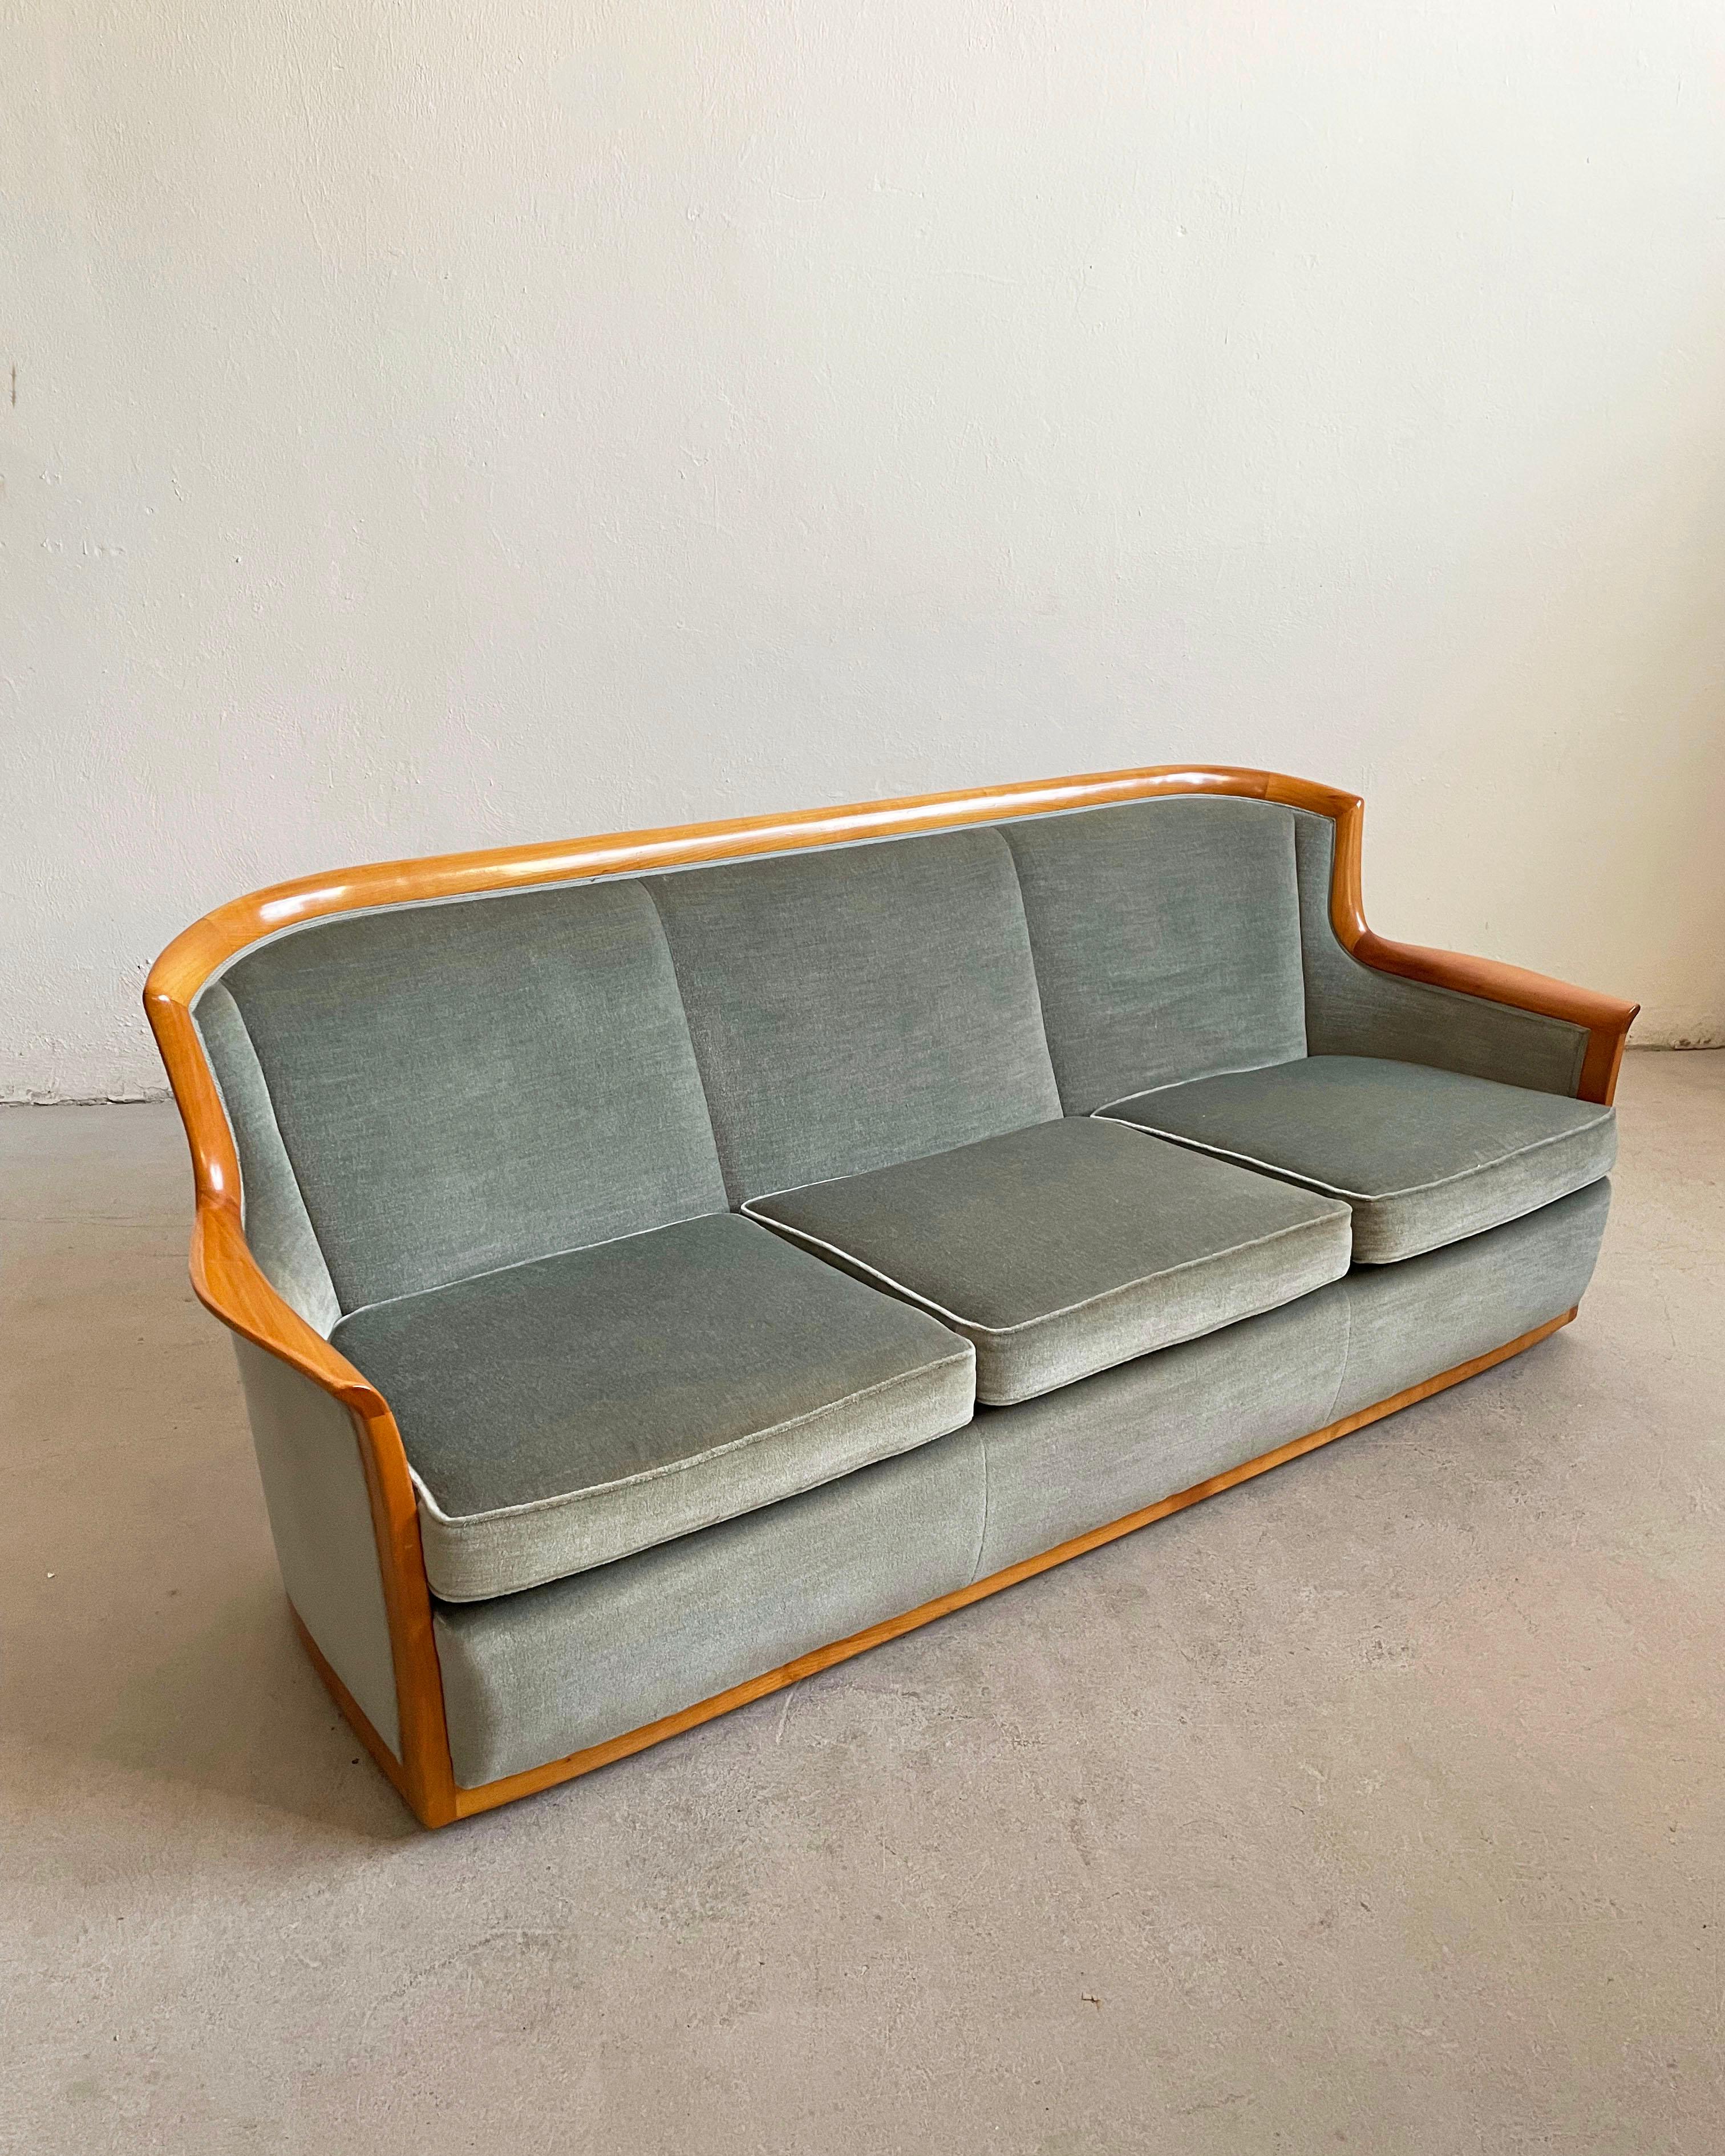 Salon vintage scandinave du milieu du siècle, datant des années 1960.

Le groupe de sièges se compose d'un canapé à trois places et de deux fauteuils à dossier incurvé, recouverts de velours bleu gris d'origine, reposant sur des roulettes en métal